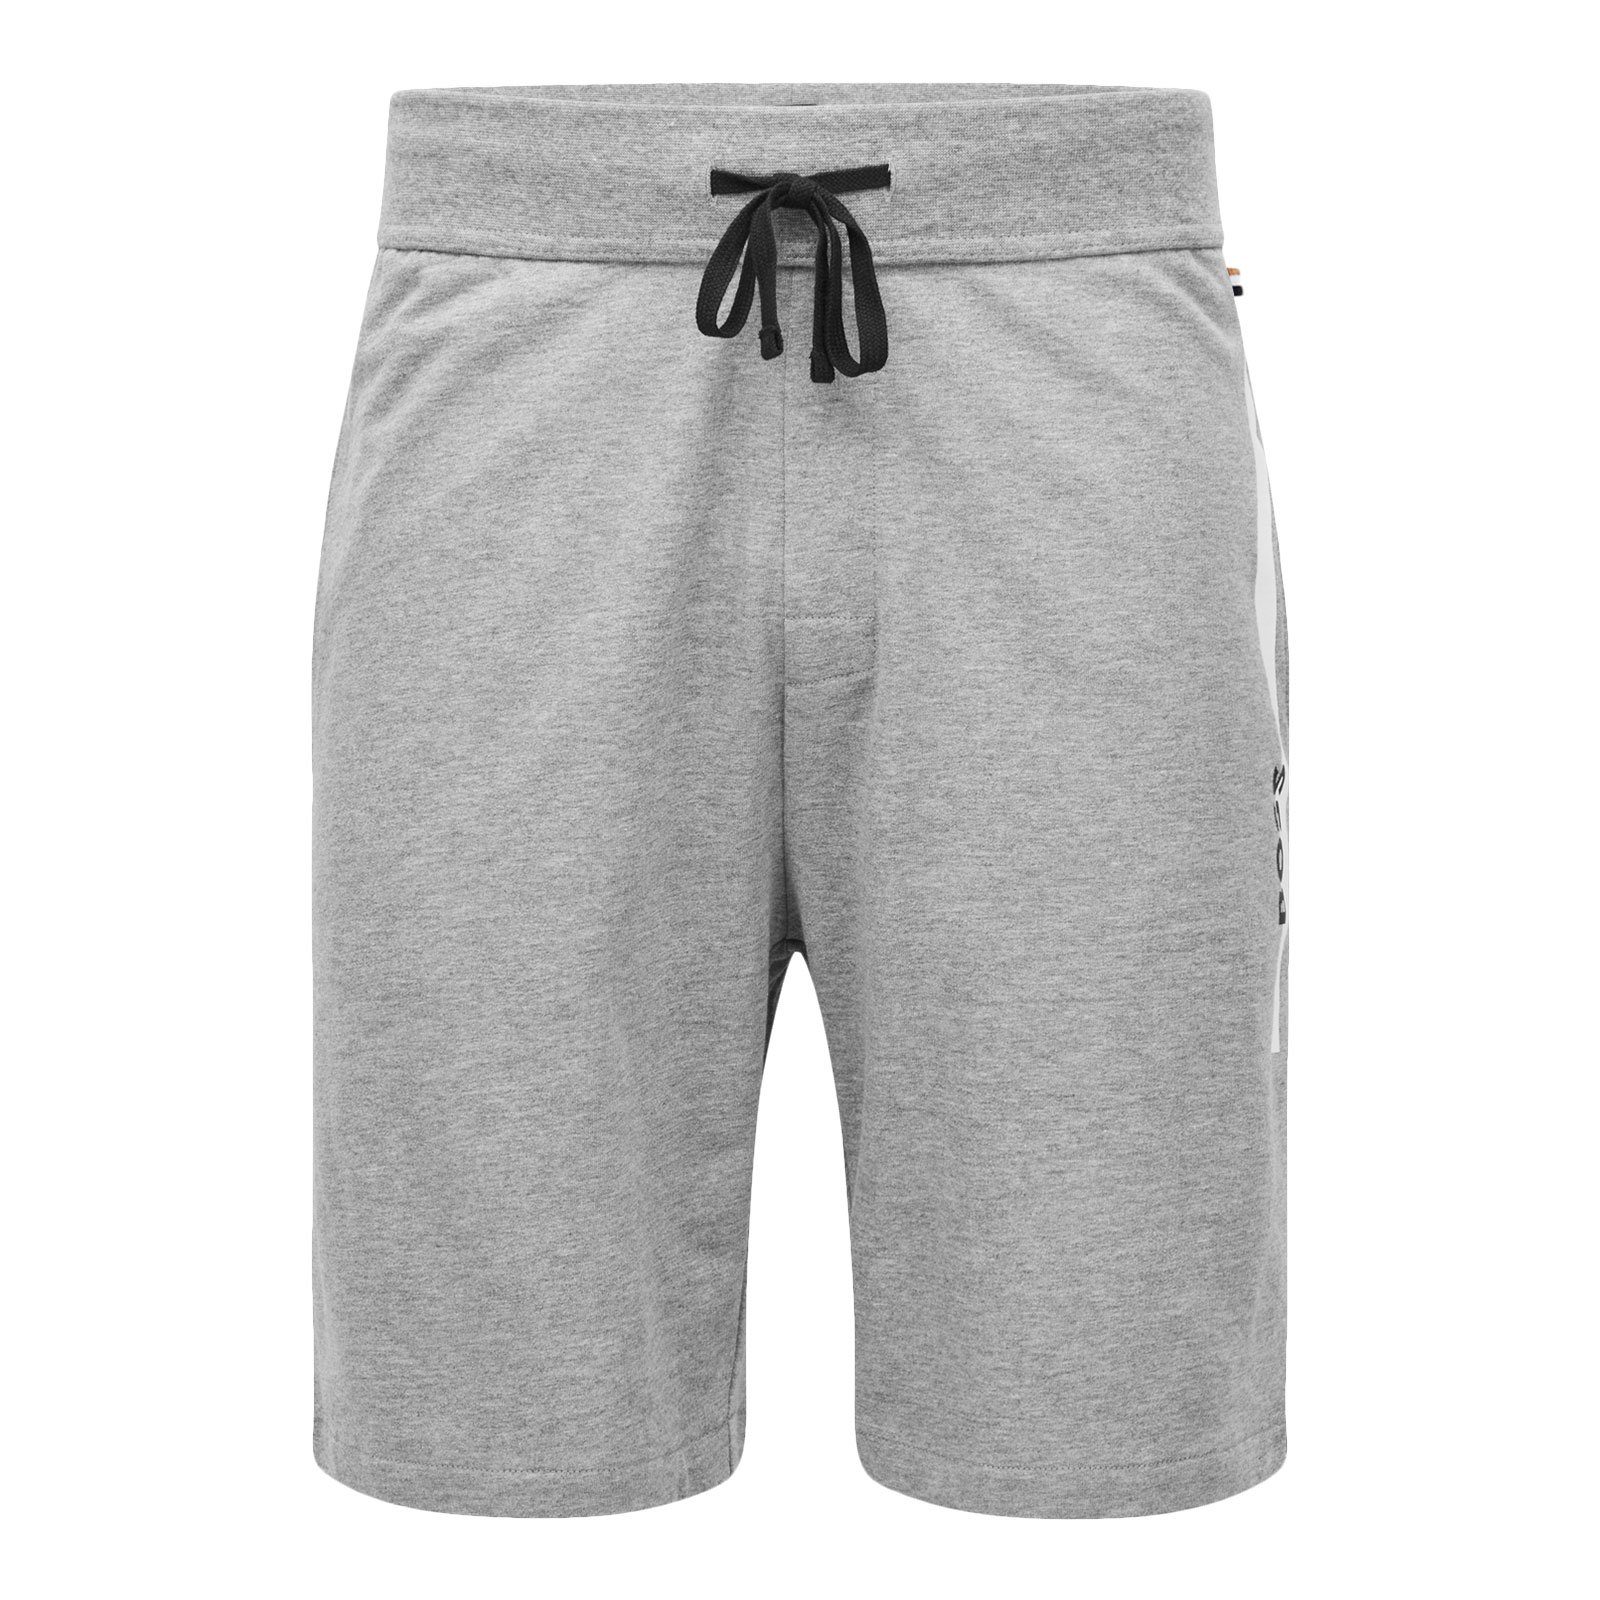 BOSS Shorts Authentic Shorts mit kontrastfarbenen Streifen 033 medium grey